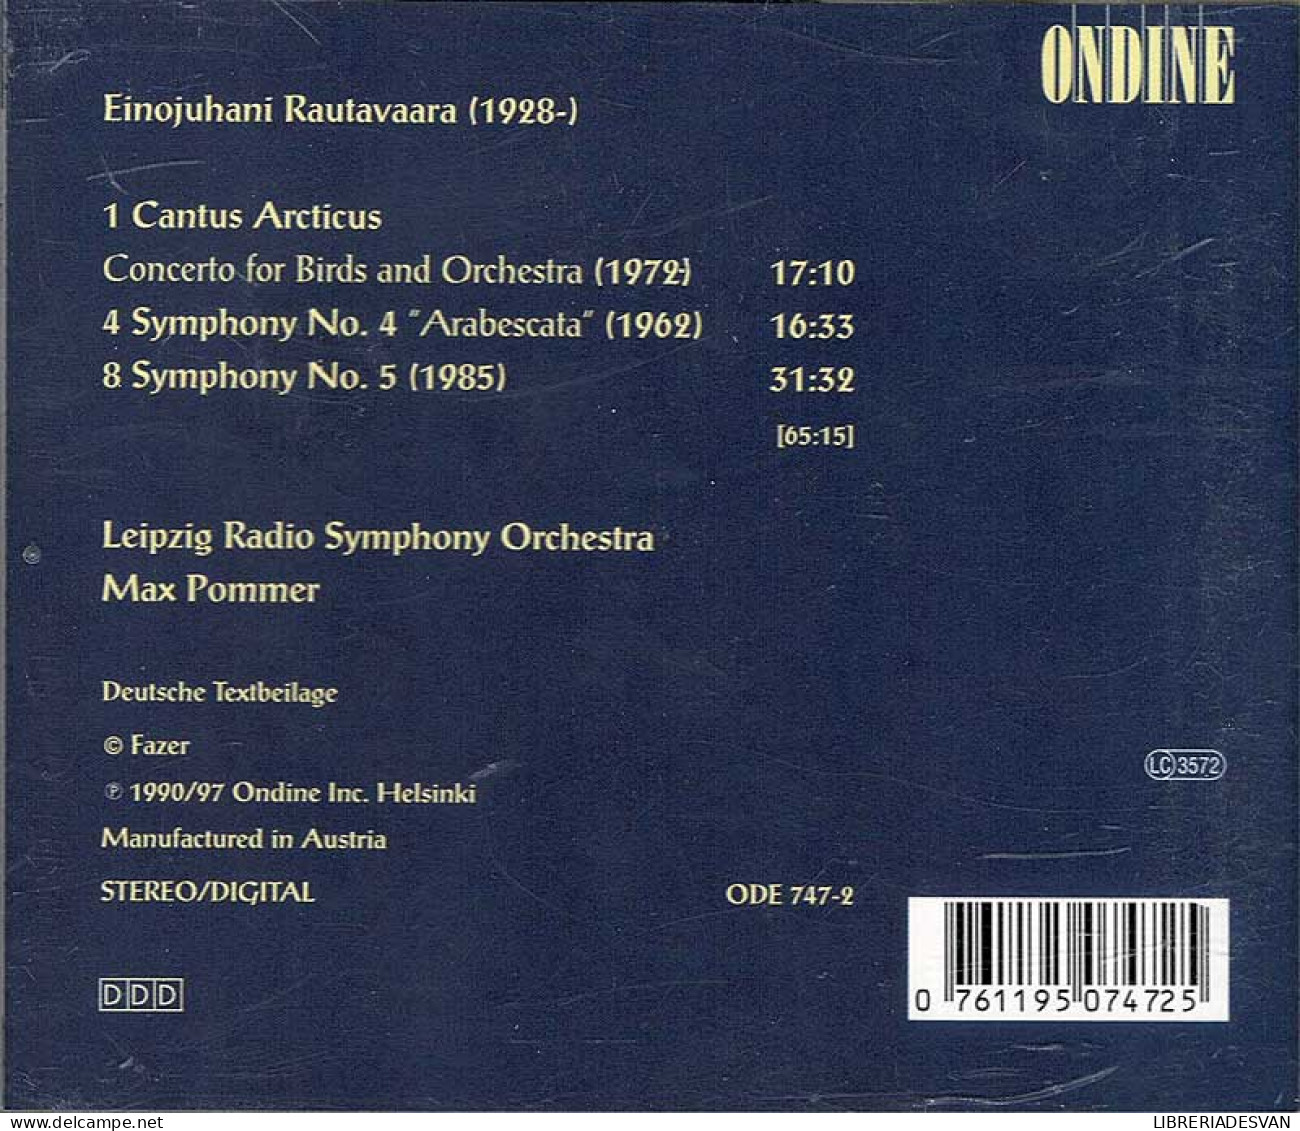 Rautavaara - Cantus Arcticus. Symphonies 4 & 5. CD - Clásica